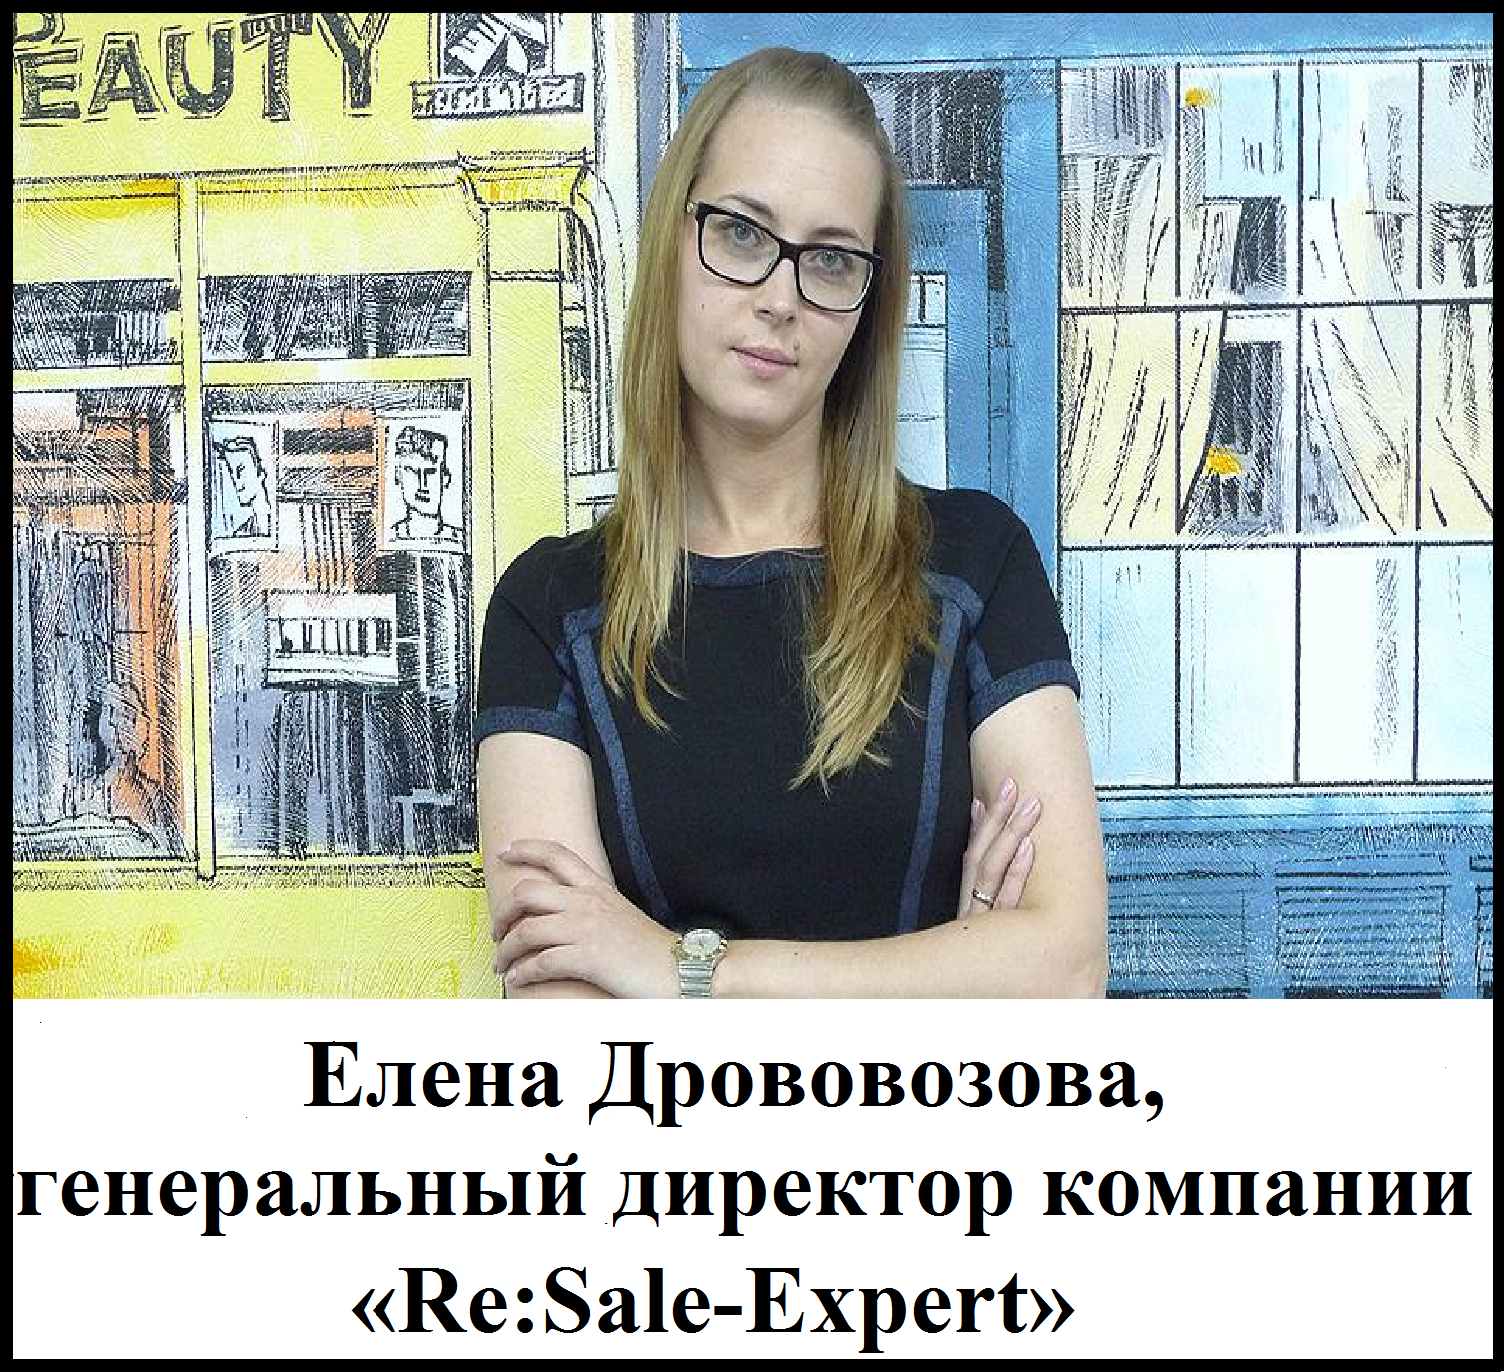 Елена Дрововозова, генеральный директор компании "Re:Sale-Expert"